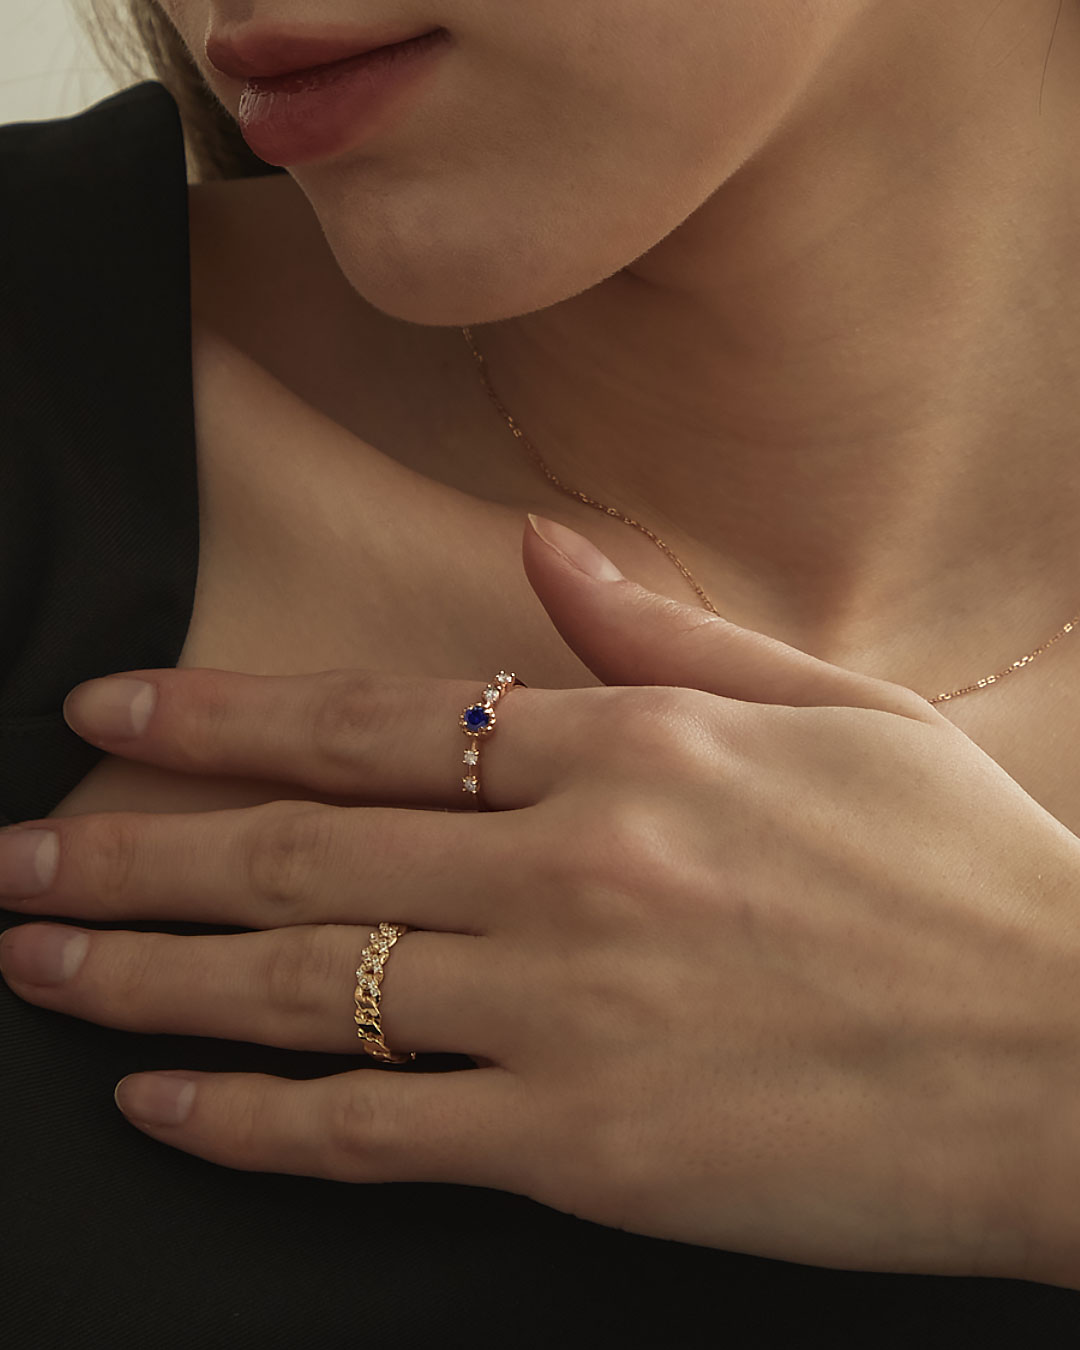 천연 블루 사파이어와 화이트 다이아몬드가 세팅된 반지이다.